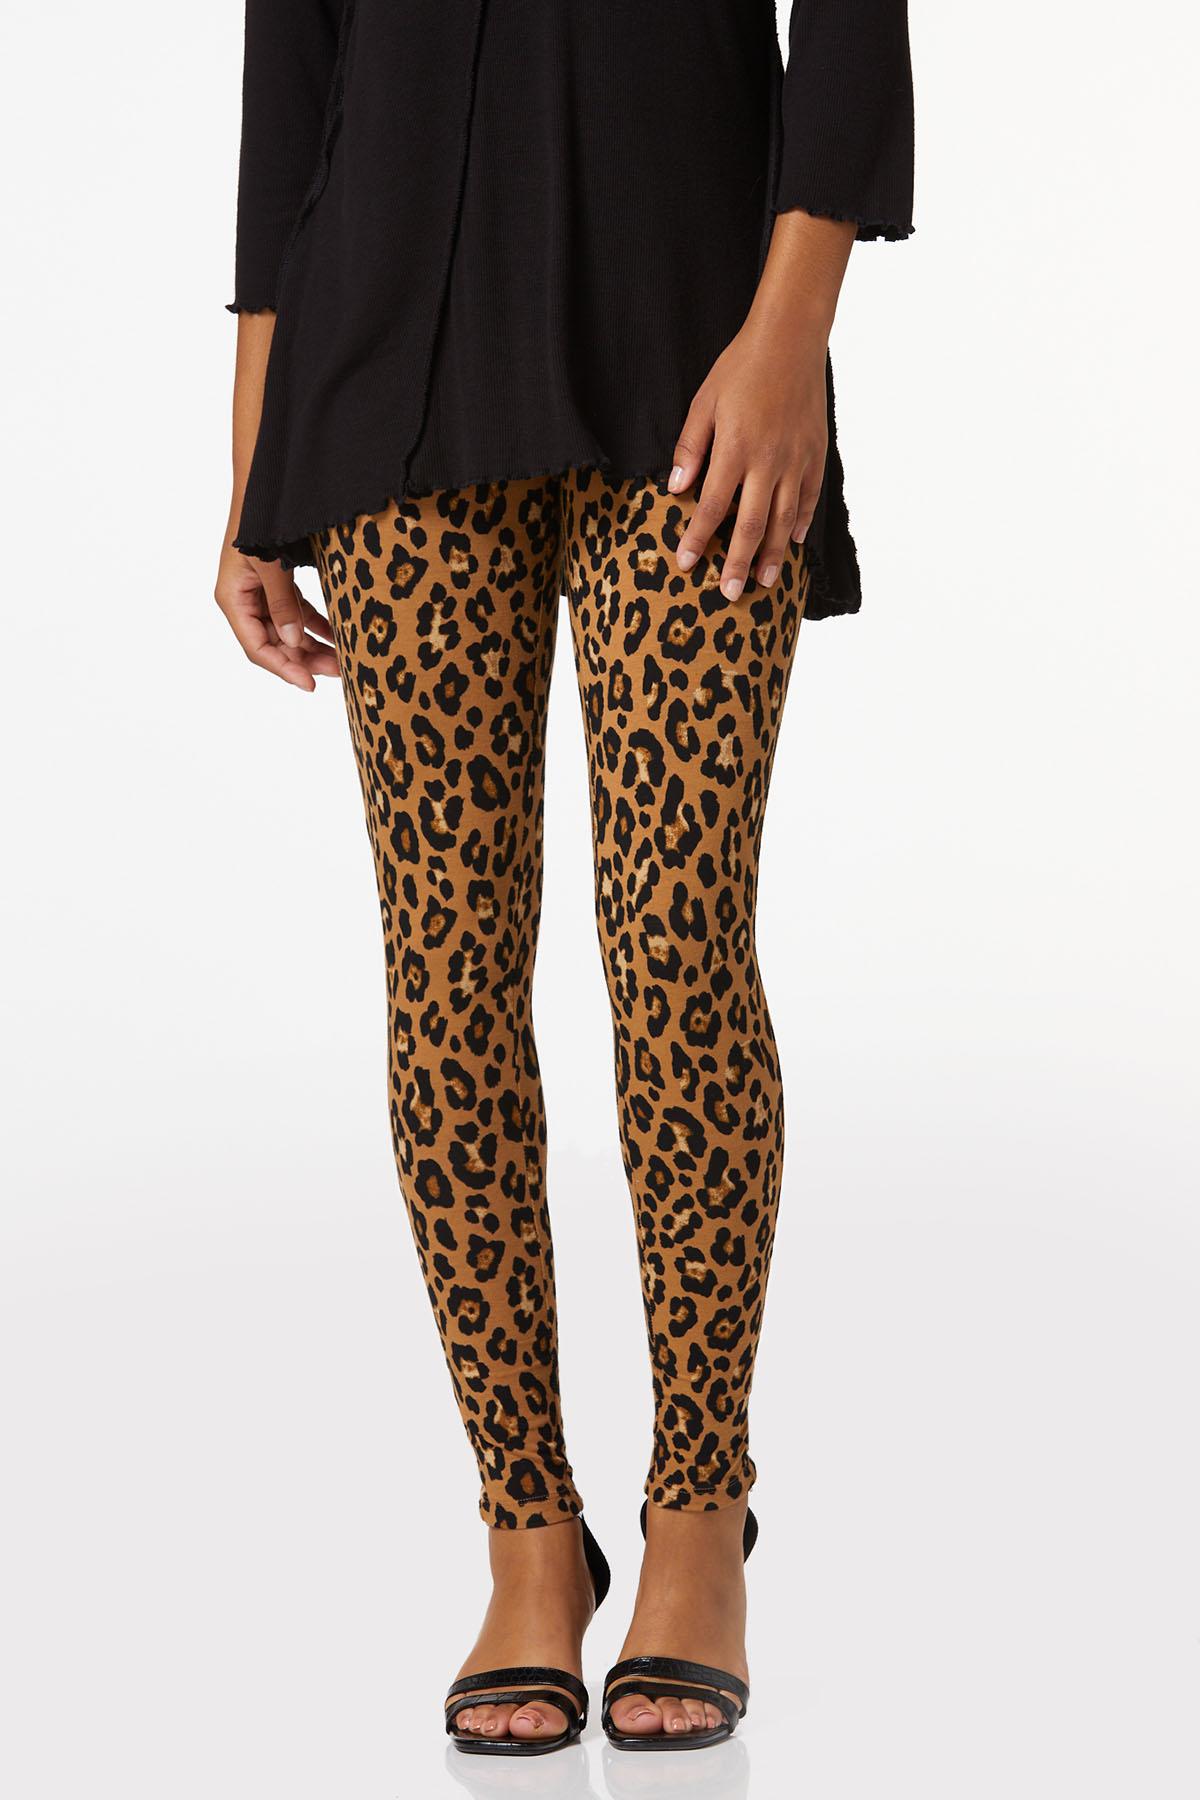 Cato Fashions  Cato Leopard Print Leggings